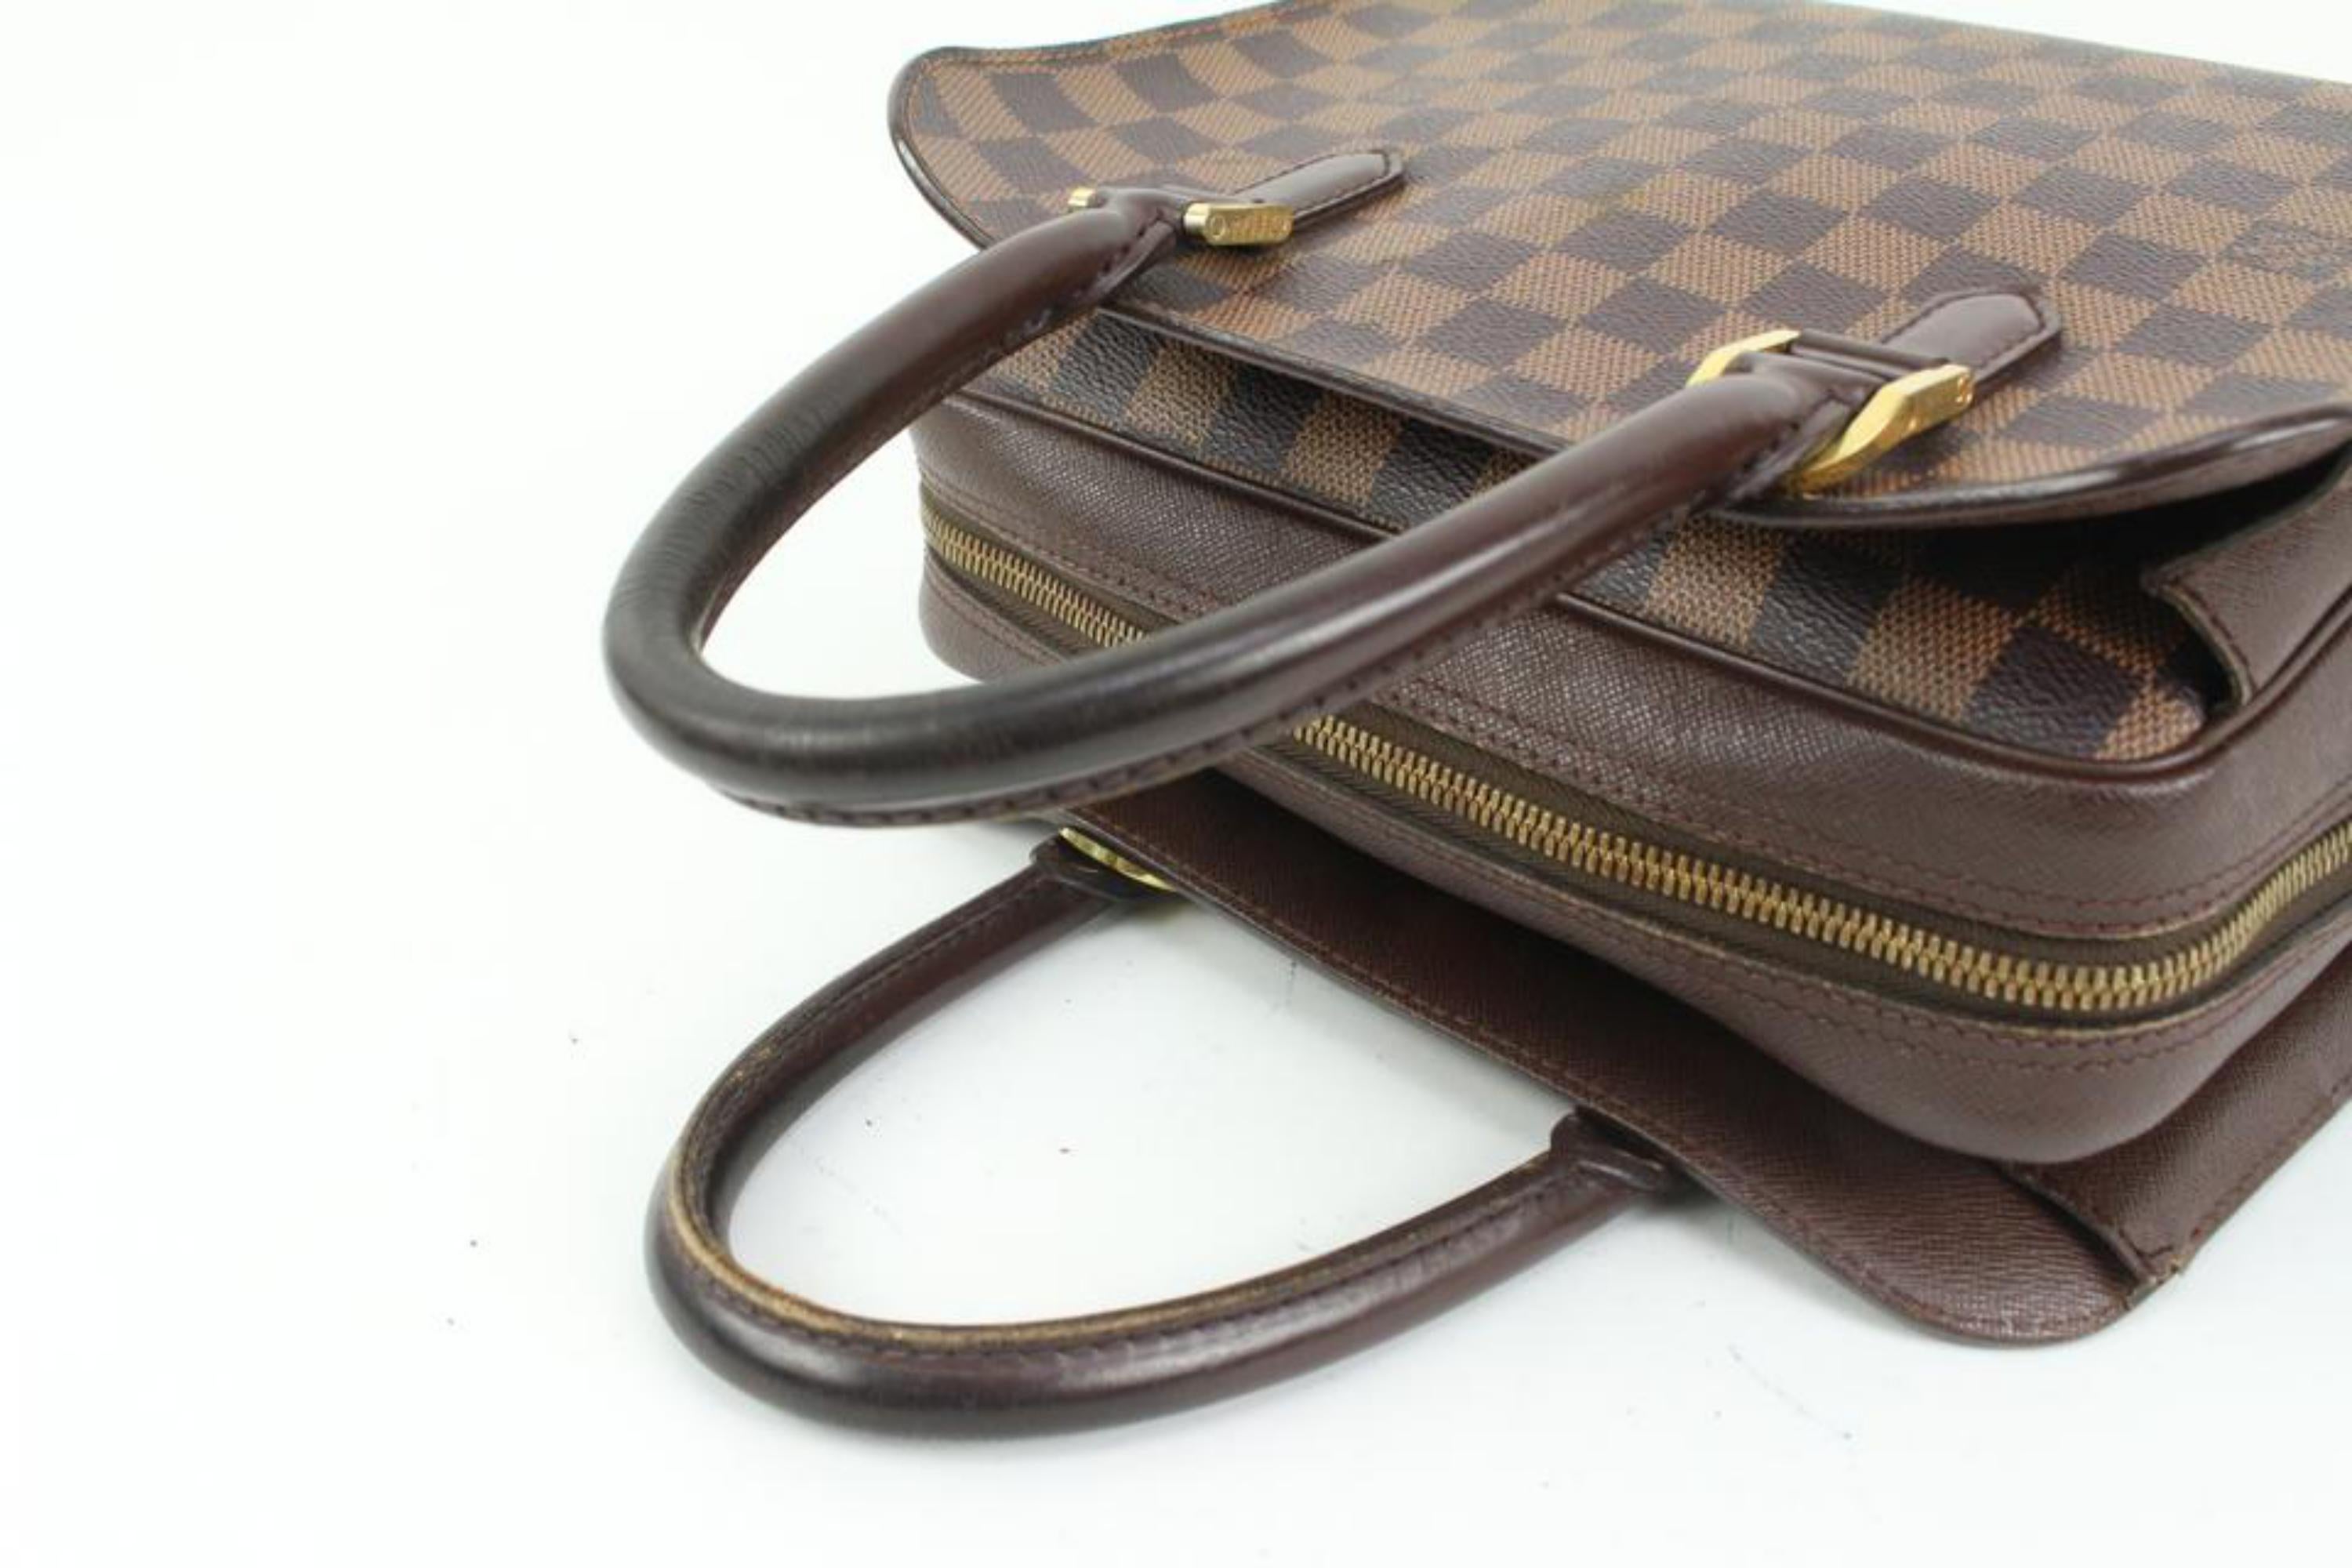 Louis Vuitton, Bags, Authentic Vintage Louis Vuitton Triana Damier Ebene  Bag